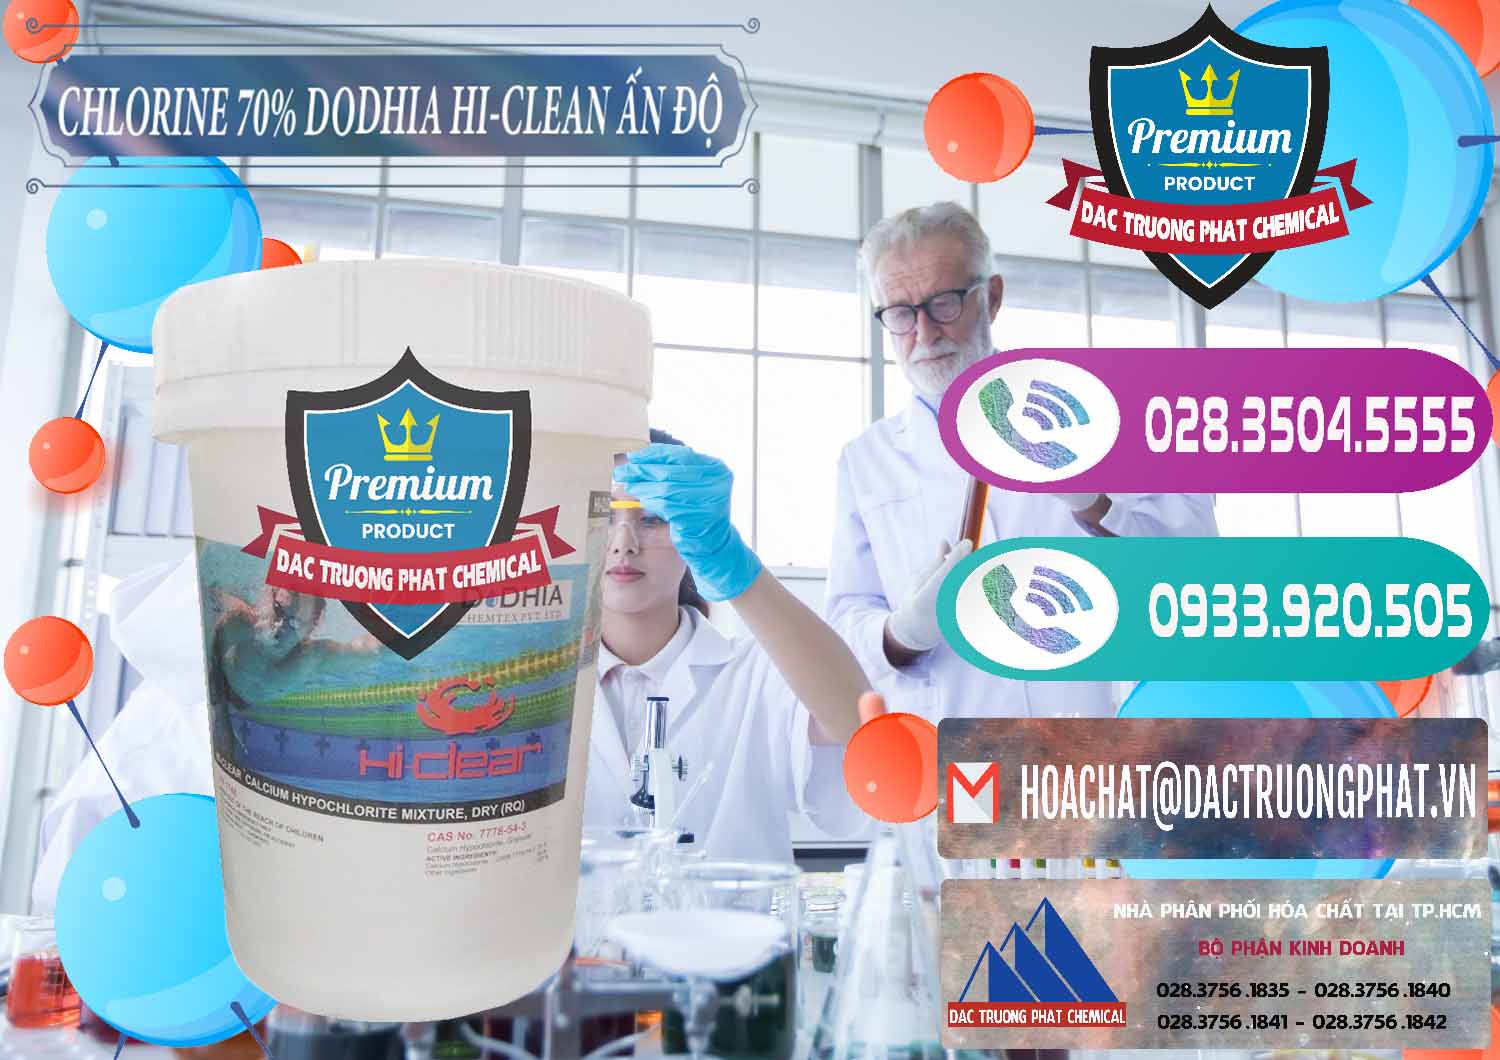 Cty chuyên bán và cung cấp Chlorine – Clorin 70% Dodhia Hi-Clean Ấn Độ India - 0214 - Cty chuyên kinh doanh ( cung cấp ) hóa chất tại TP.HCM - hoachatxulynuoc.com